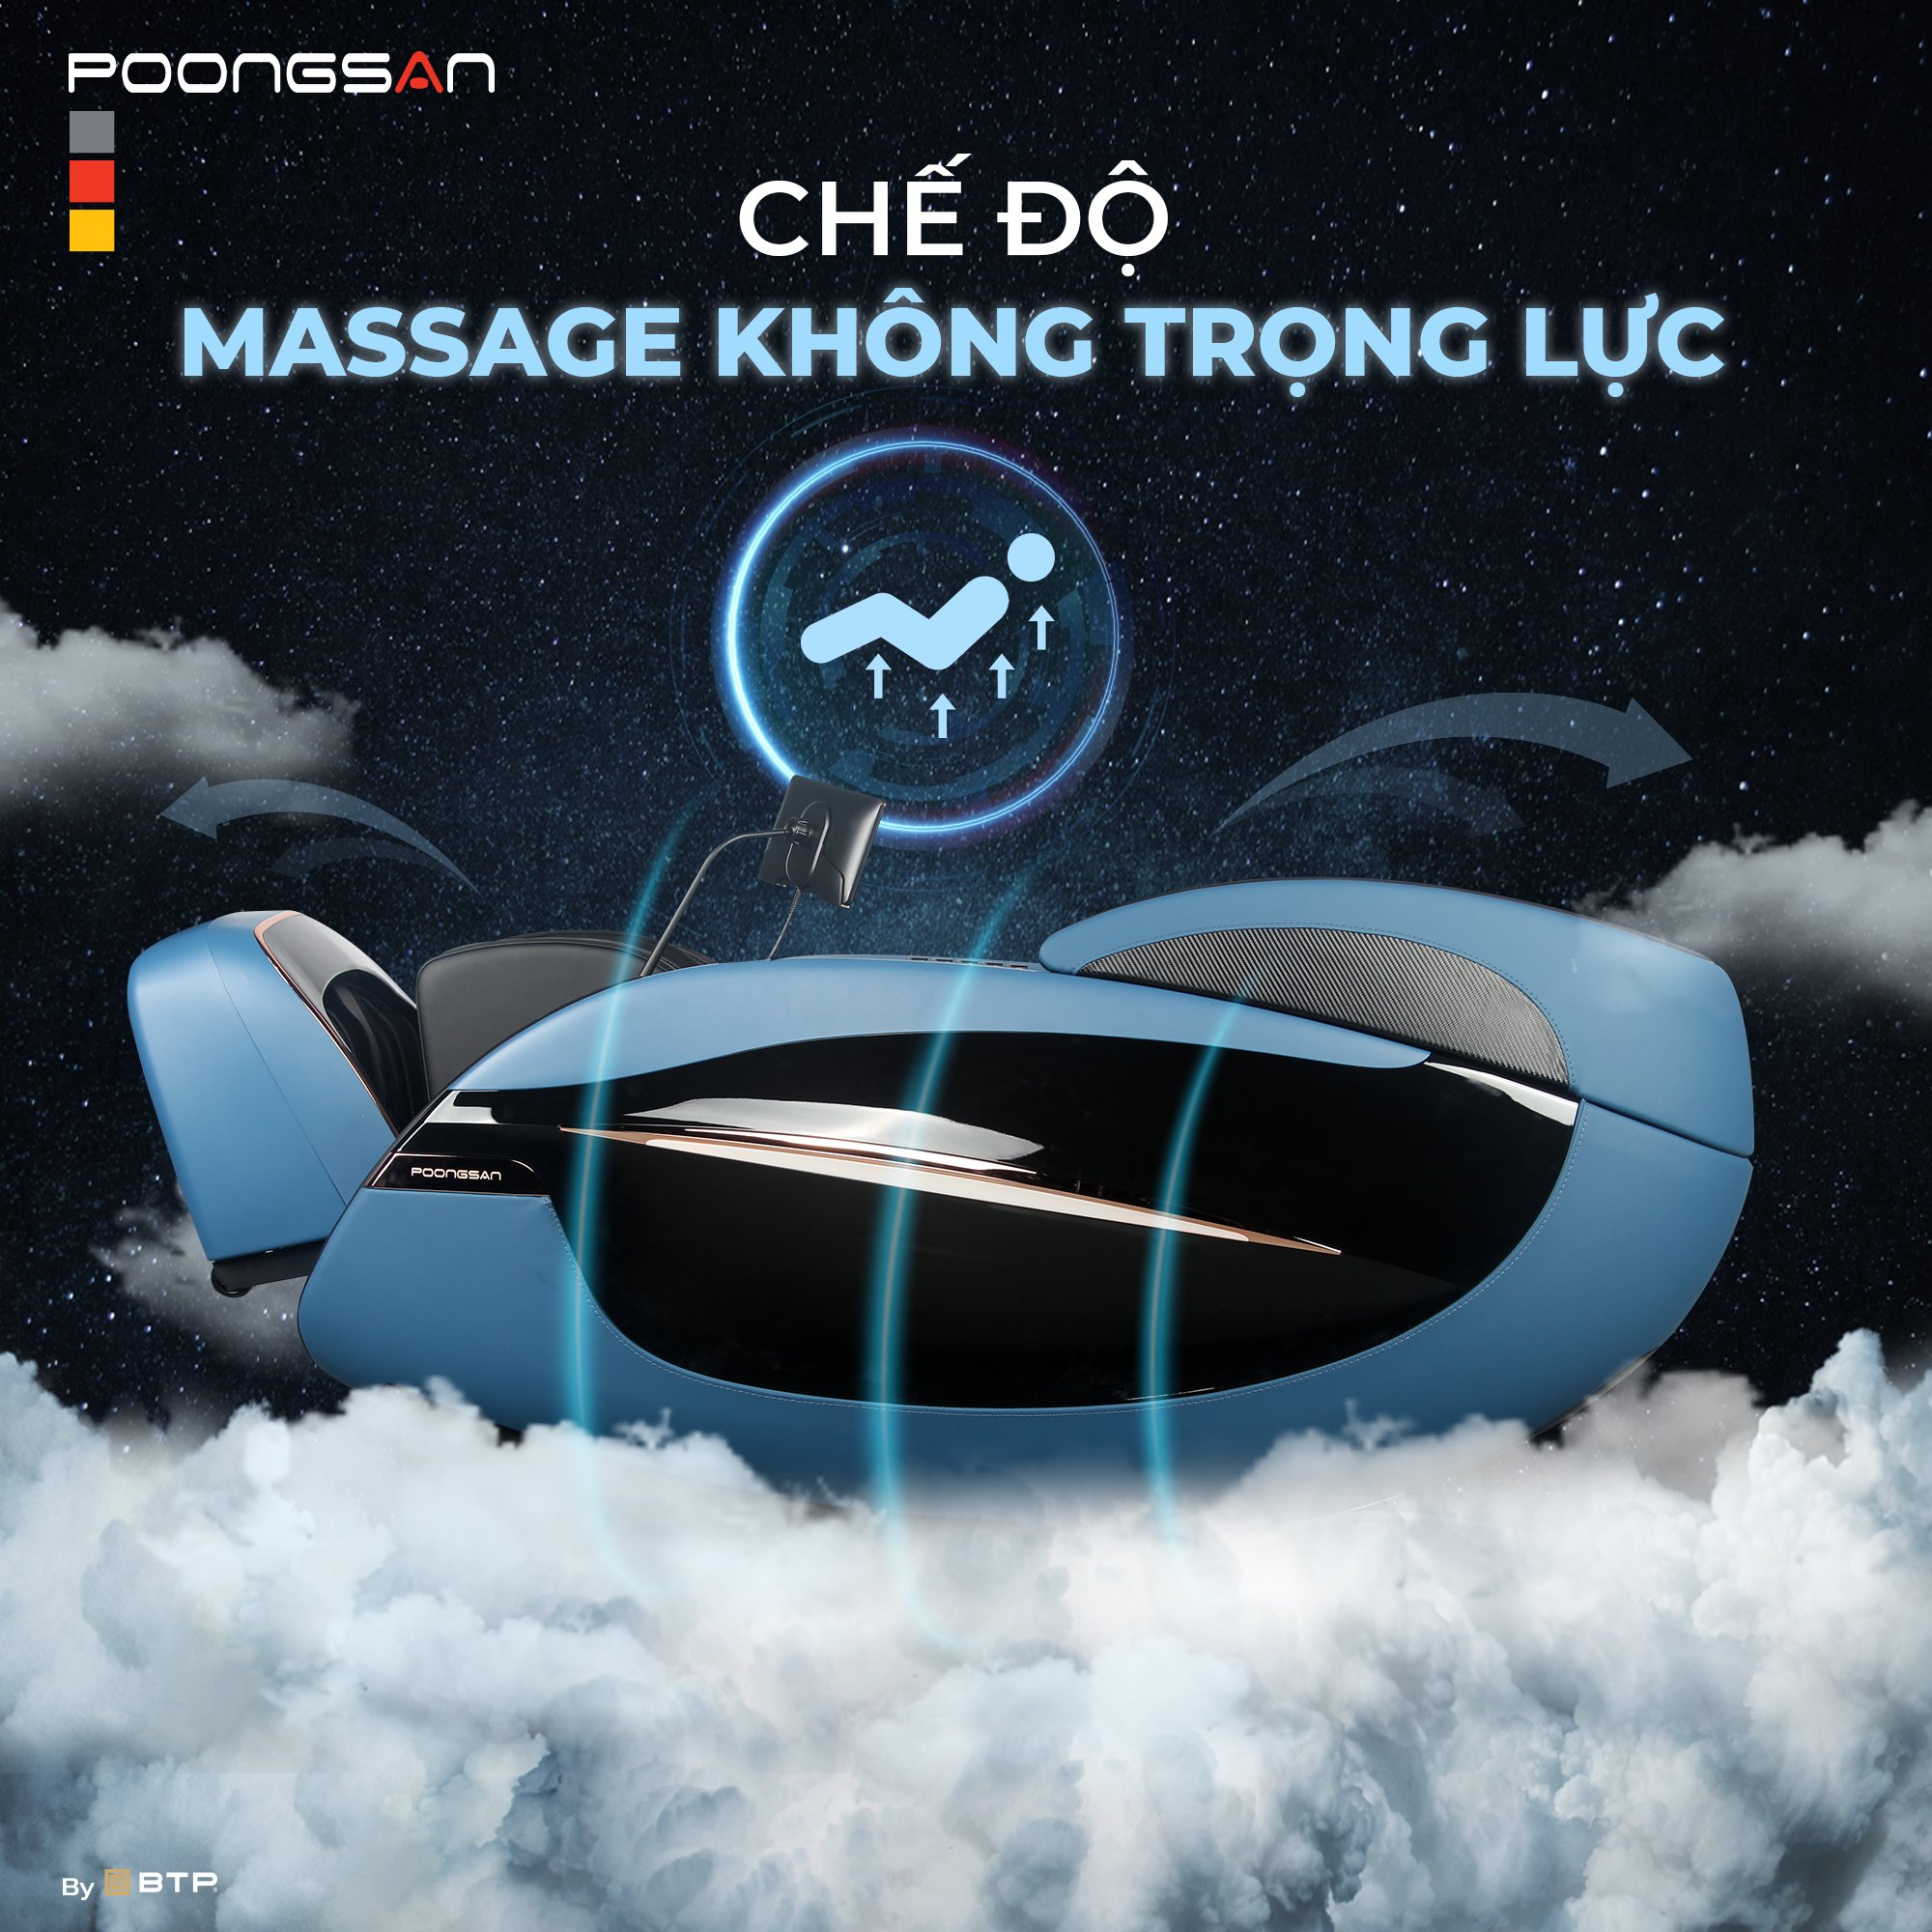 Tính năng massage không trọng lực không còn xa lạ với Poongsan